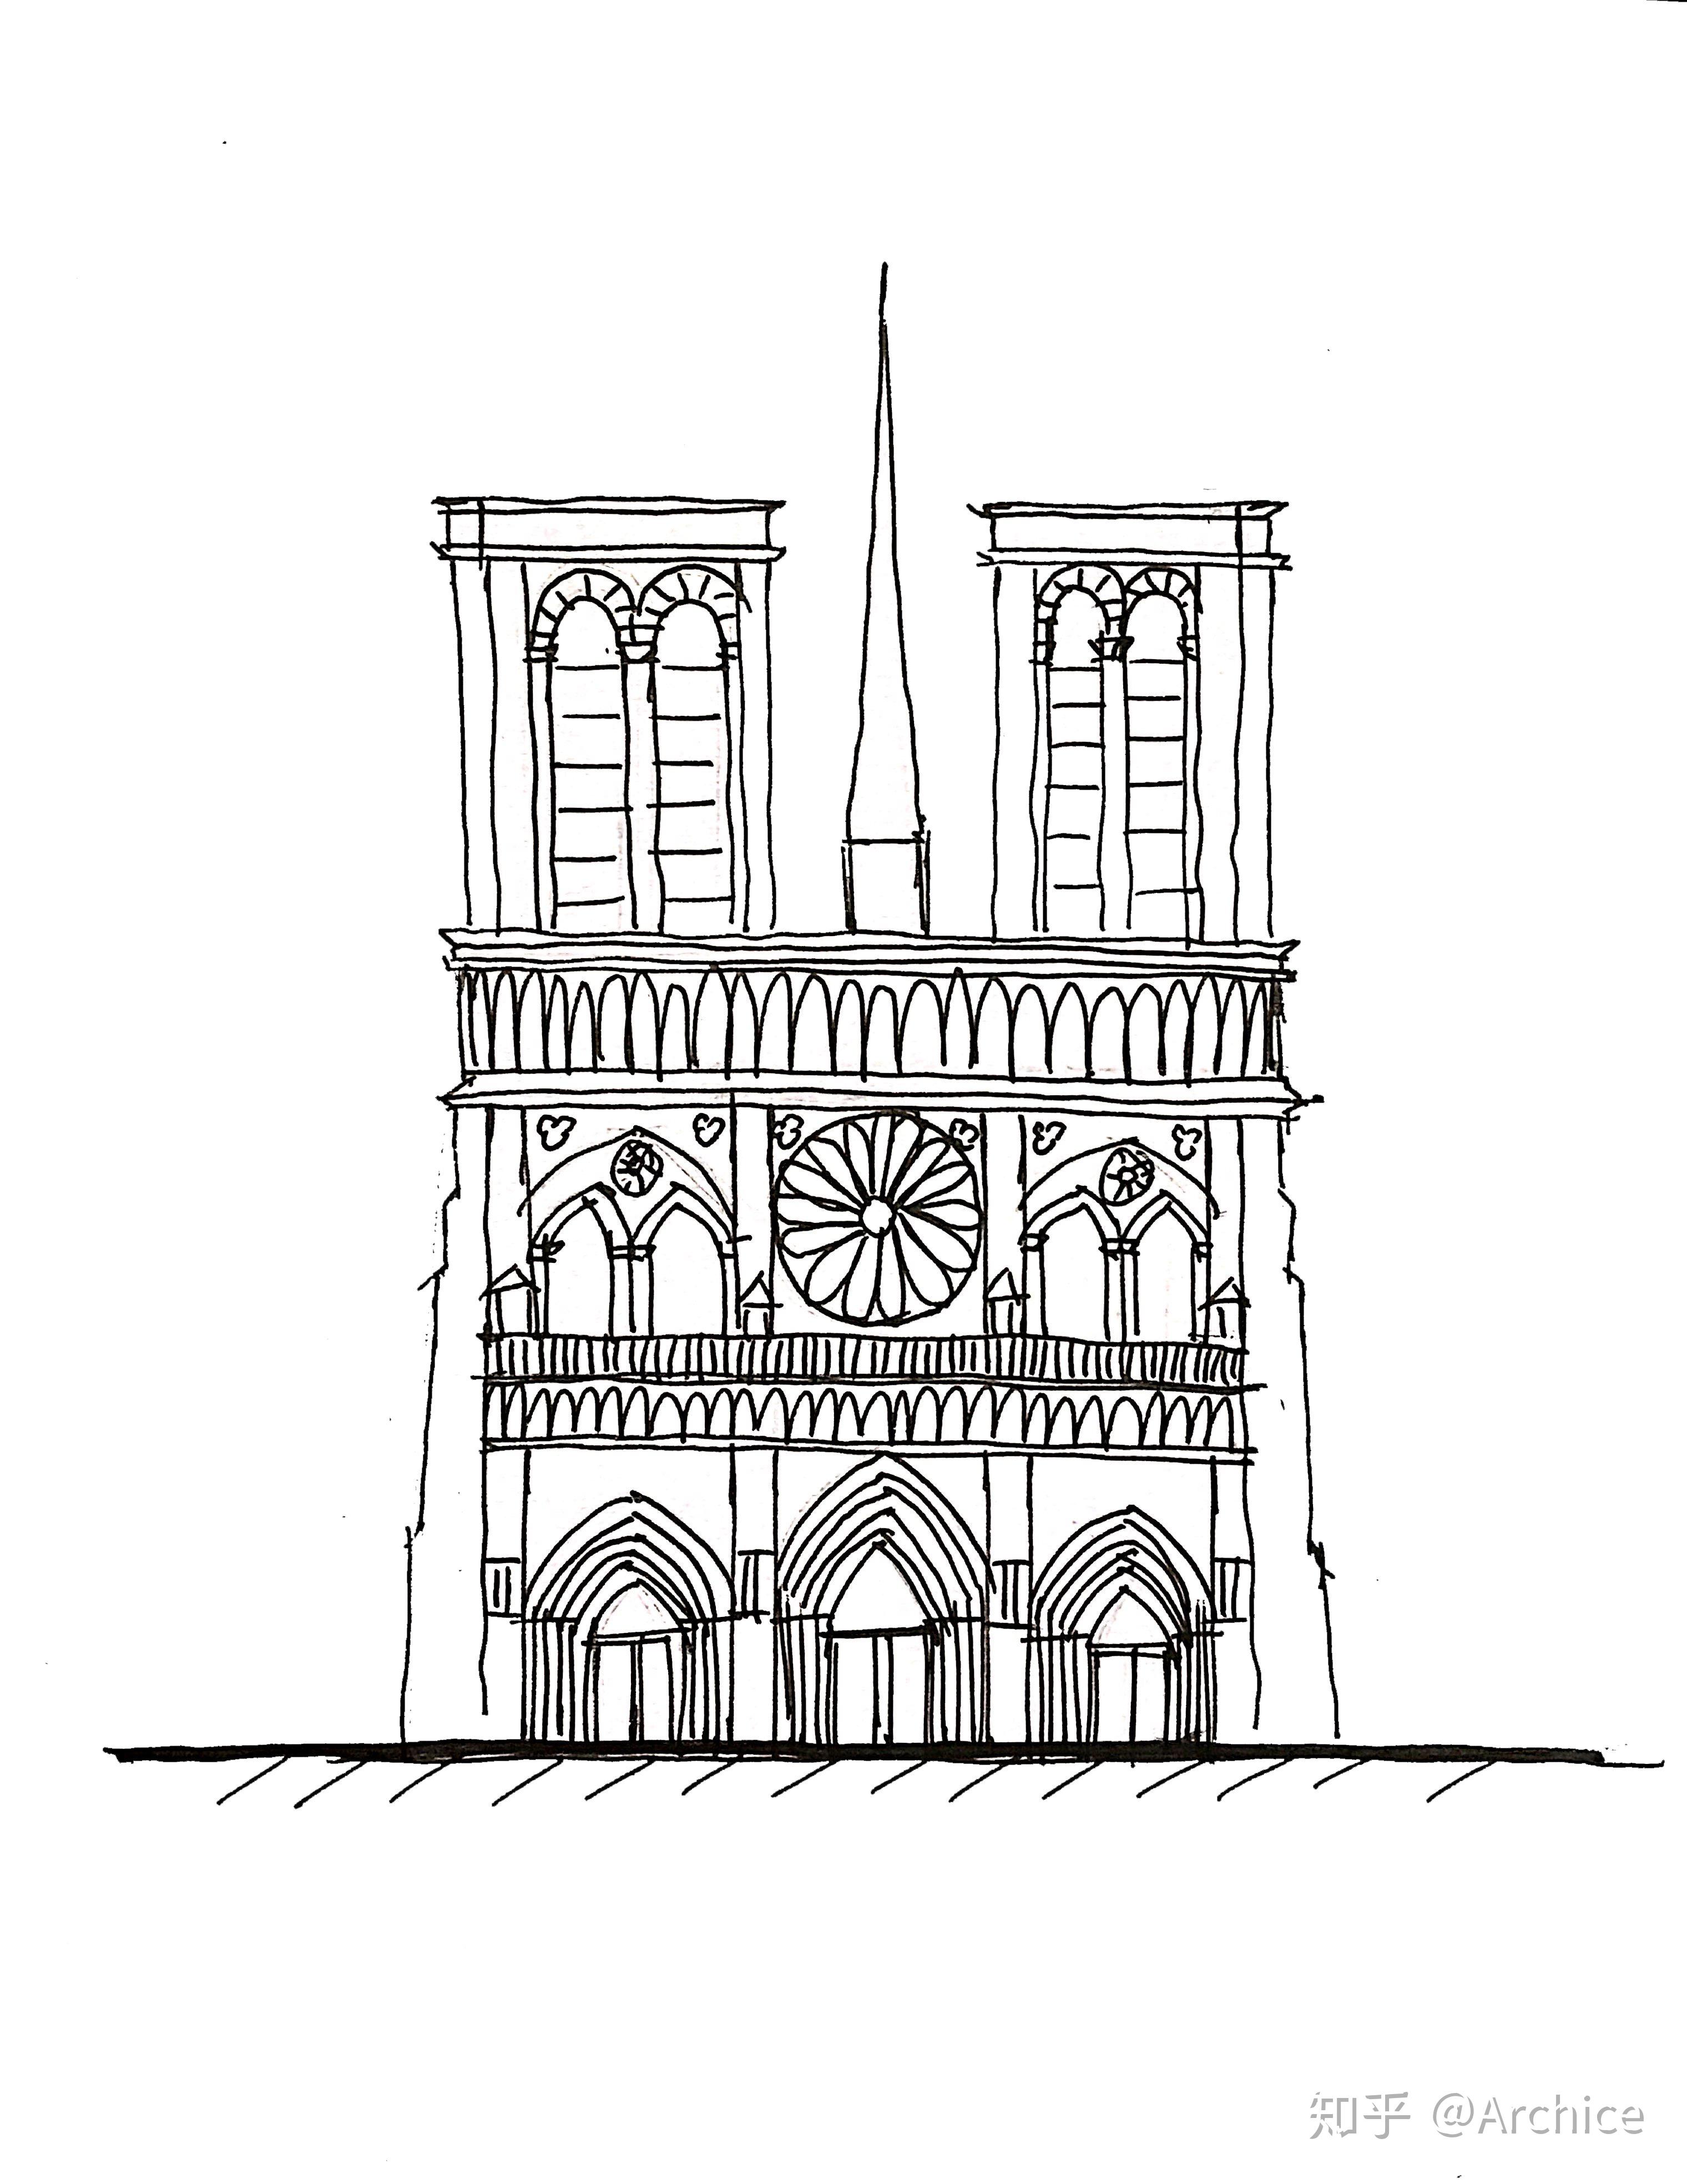 巴黎圣母院西立面:在这个图中,我们要精确表示出的有以下几个点:平面